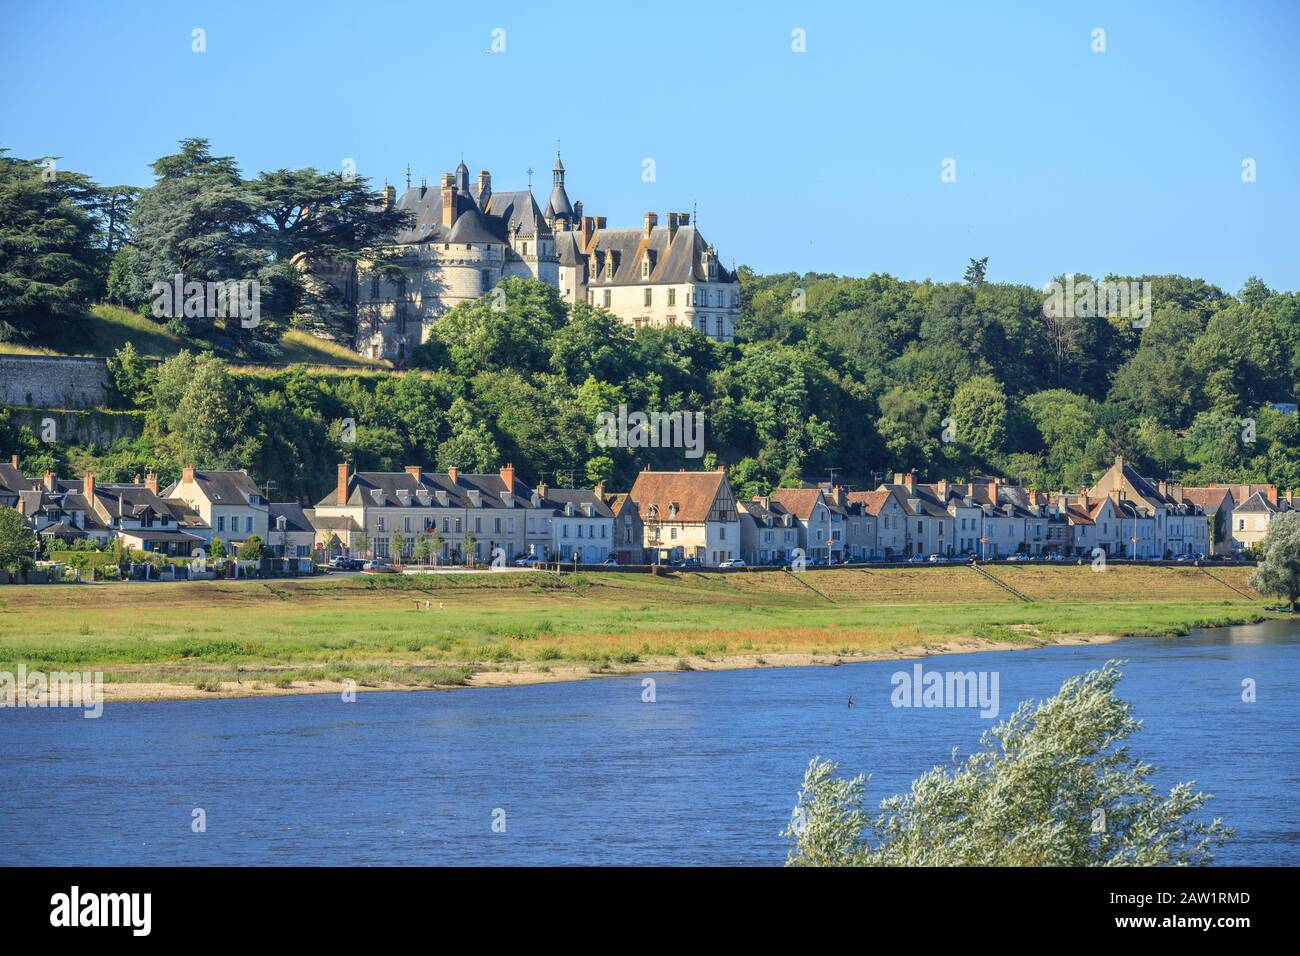 France, Loir et Cher, Loire Valley listed as World Heritage by UNESCO, Chaumont sur Loire, Domain of Chaumont sur Loire, castle overlooking the villag Stock Photo